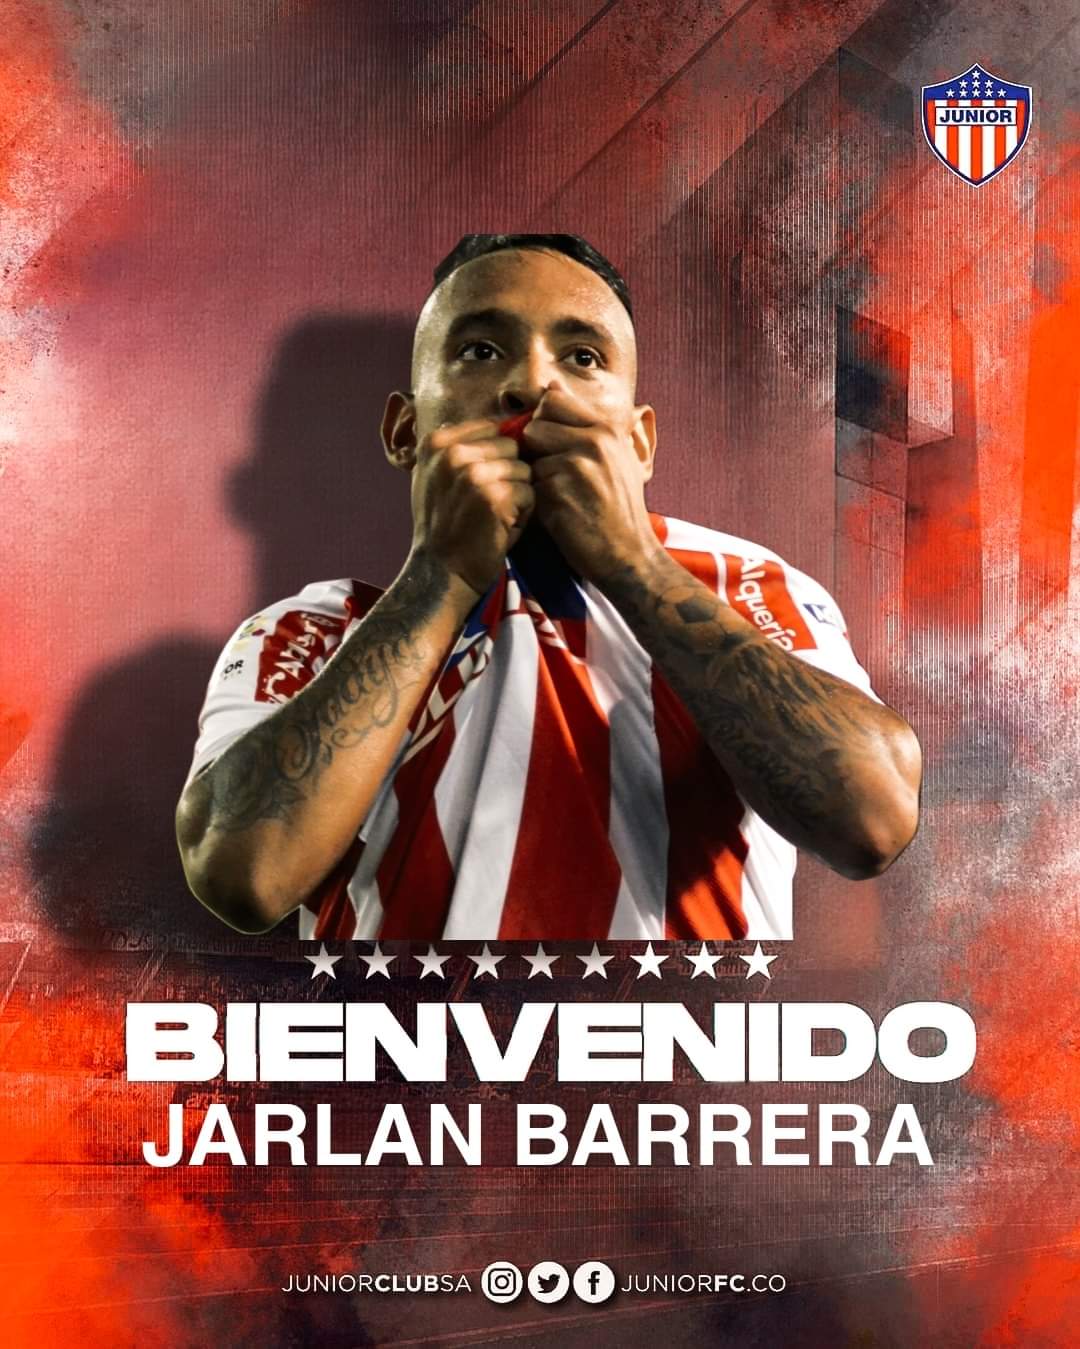 Jarlan Barrera y el anuncio como si hubiera regresado a Junior